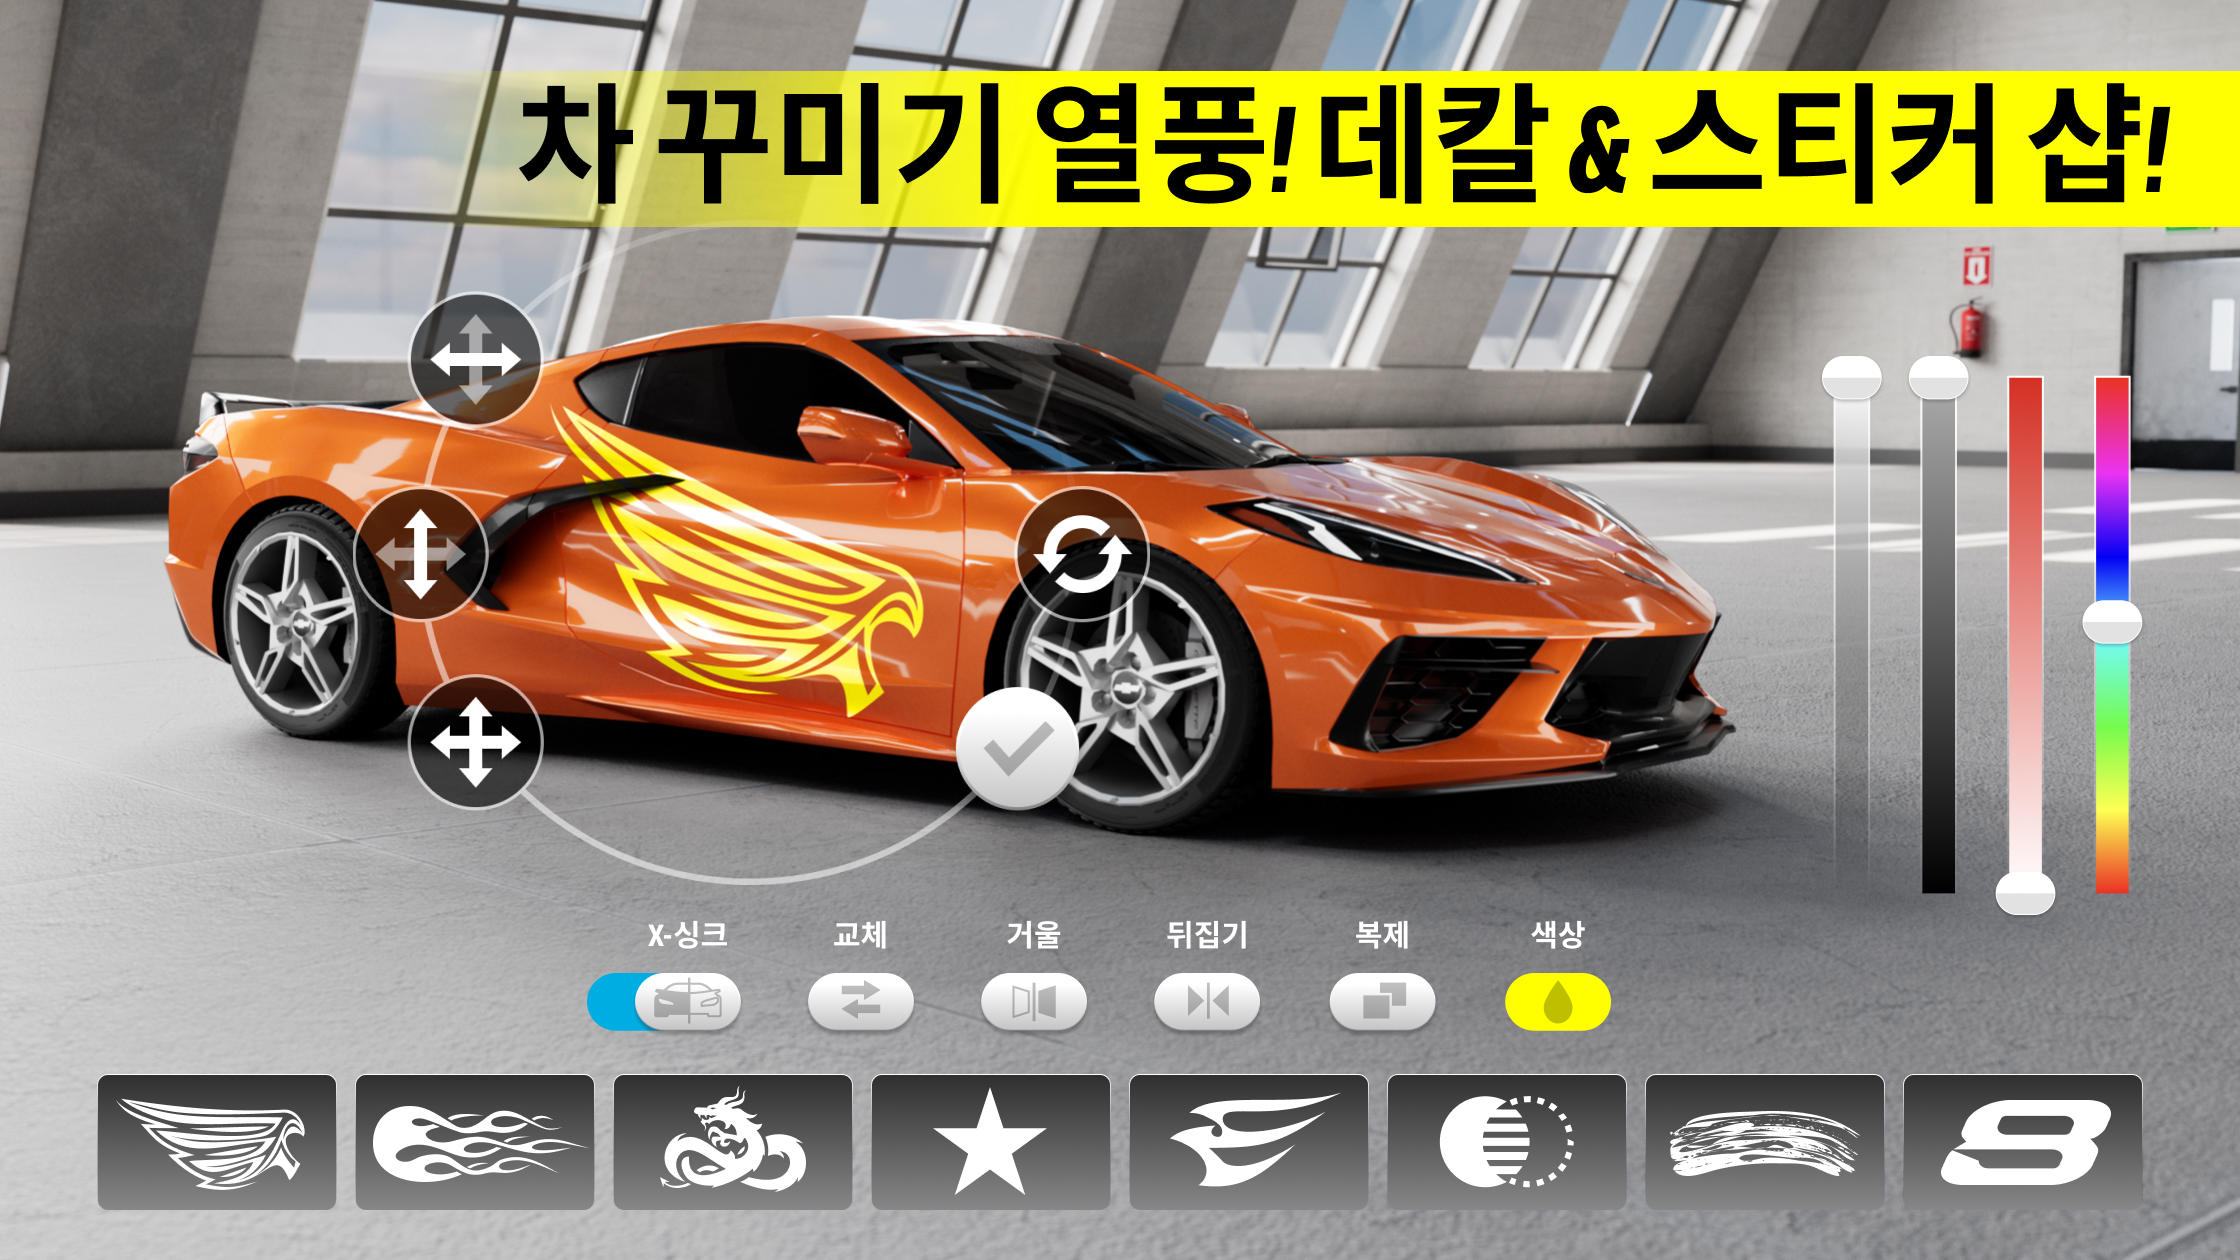 Race Max Pro - 자동차 레이싱 게임 스크린 샷